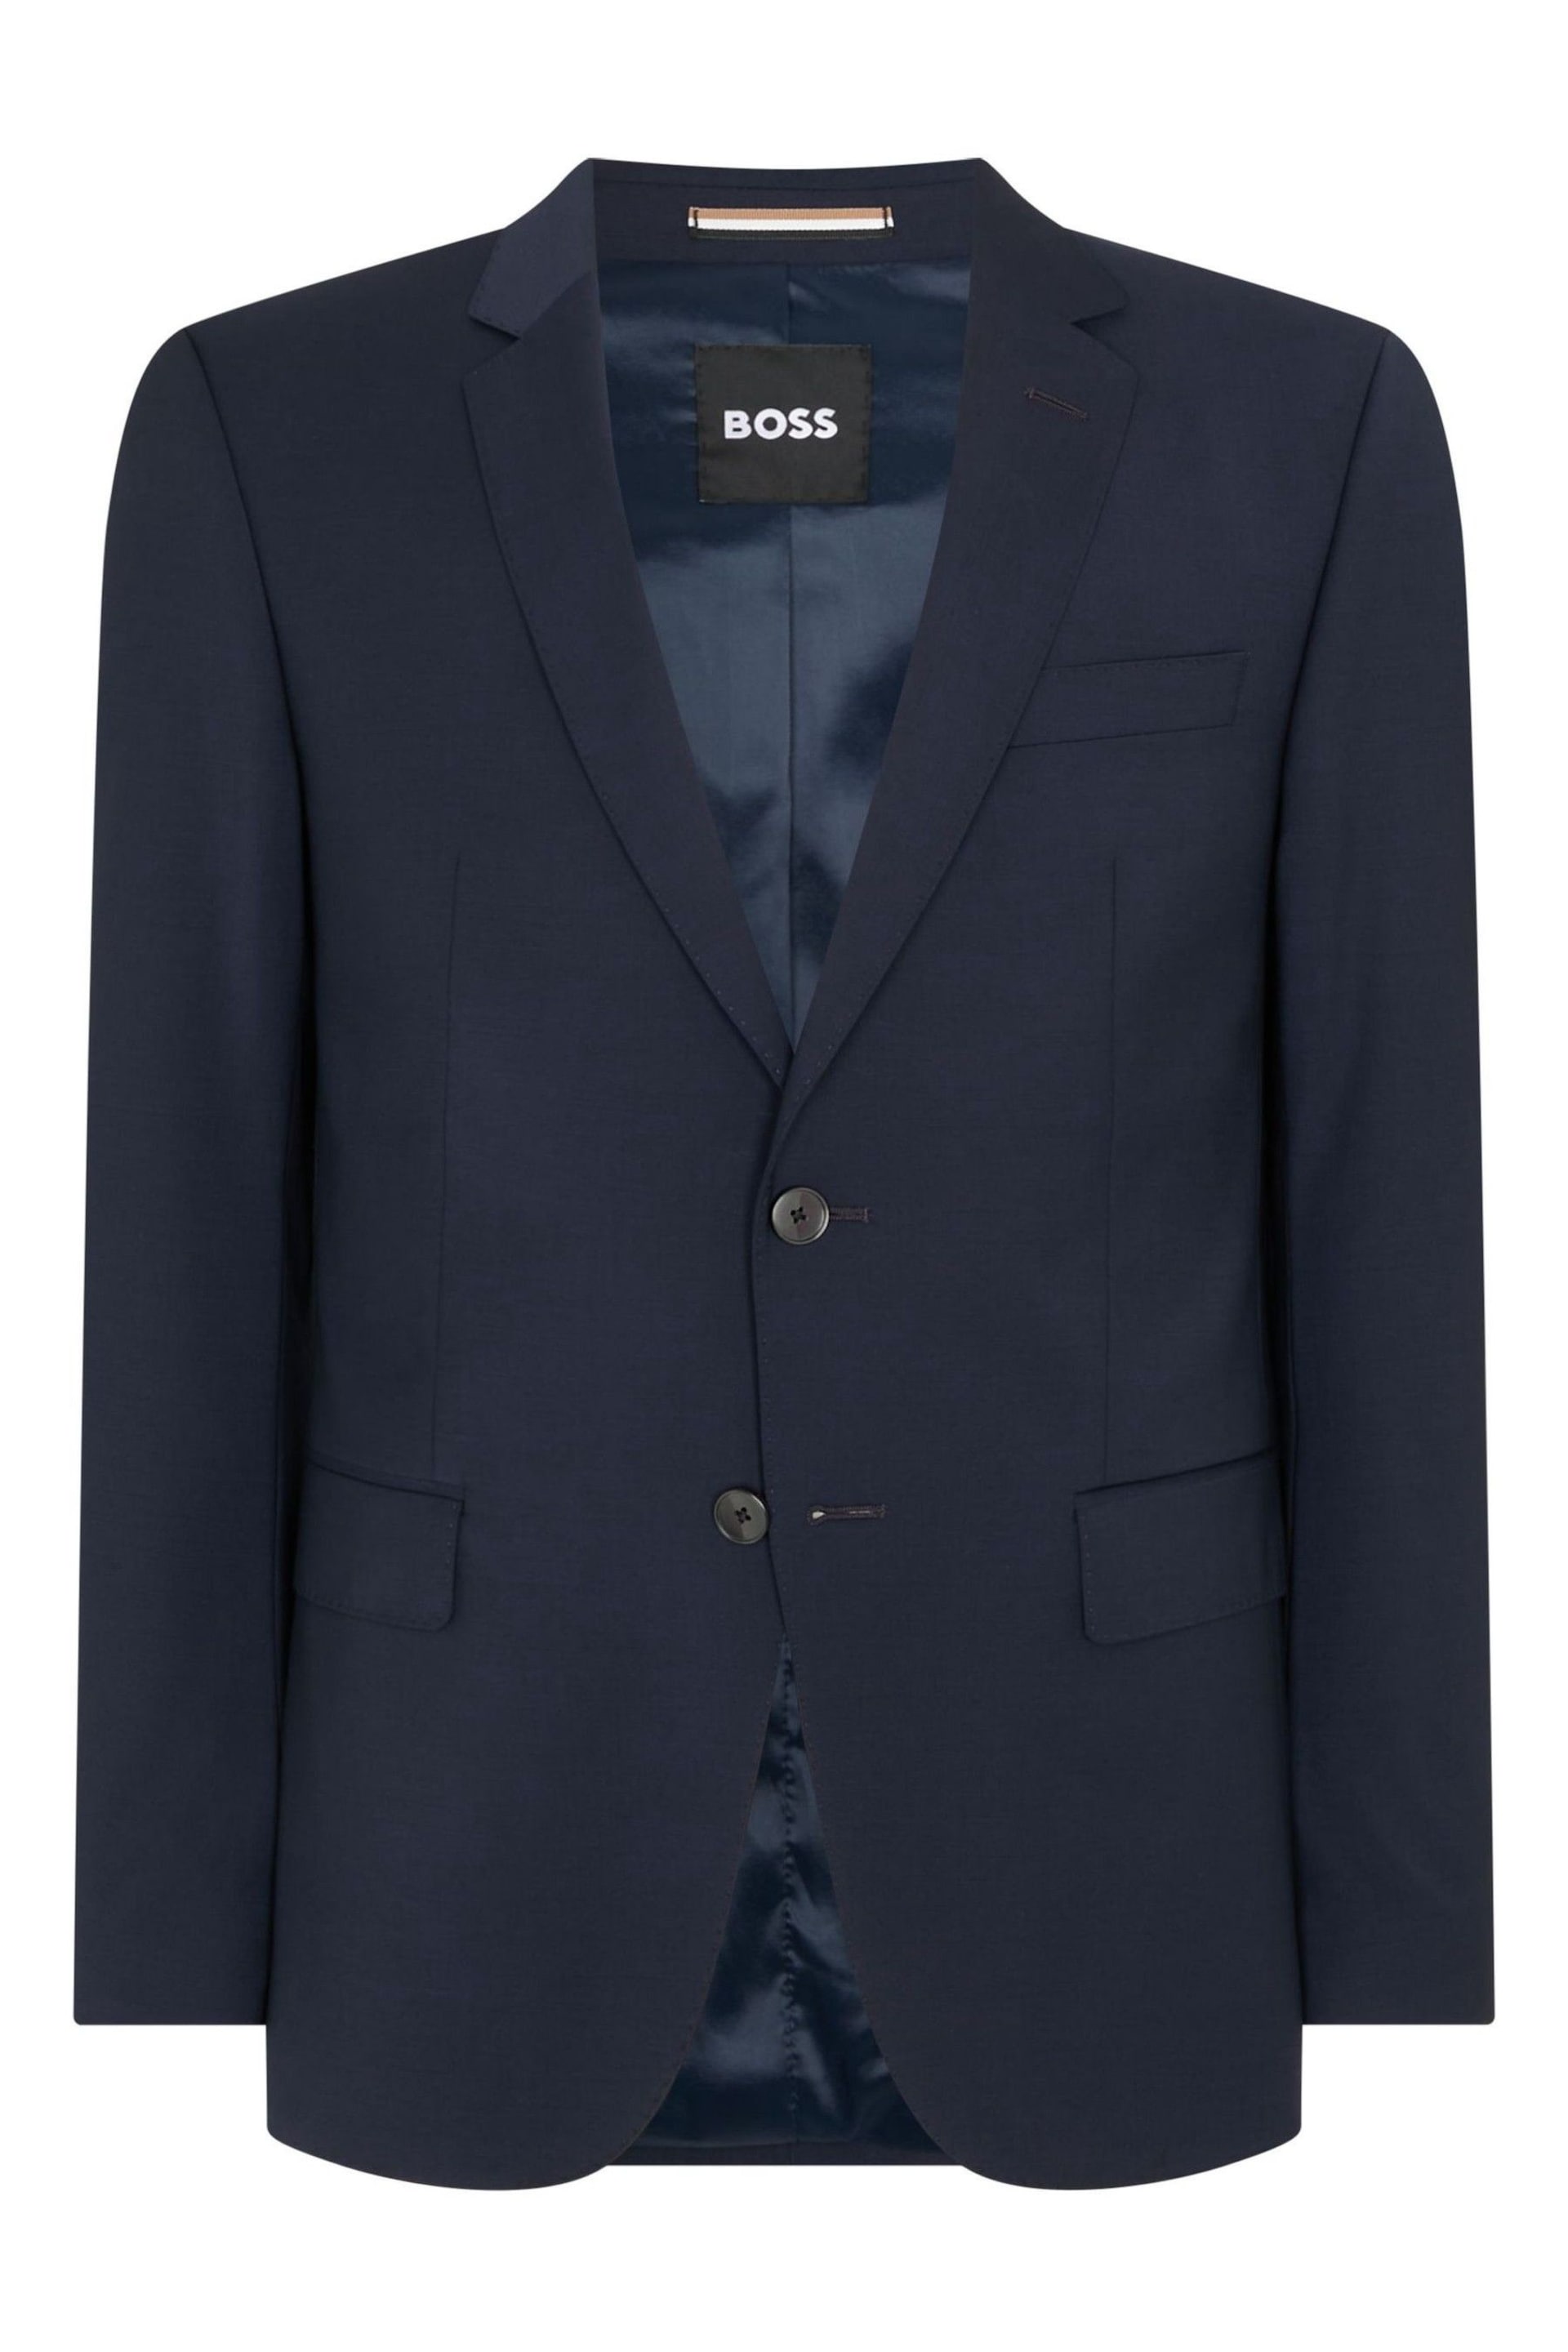 BOSS Blue Slim Fit Suit: Jacket - Image 2 of 8